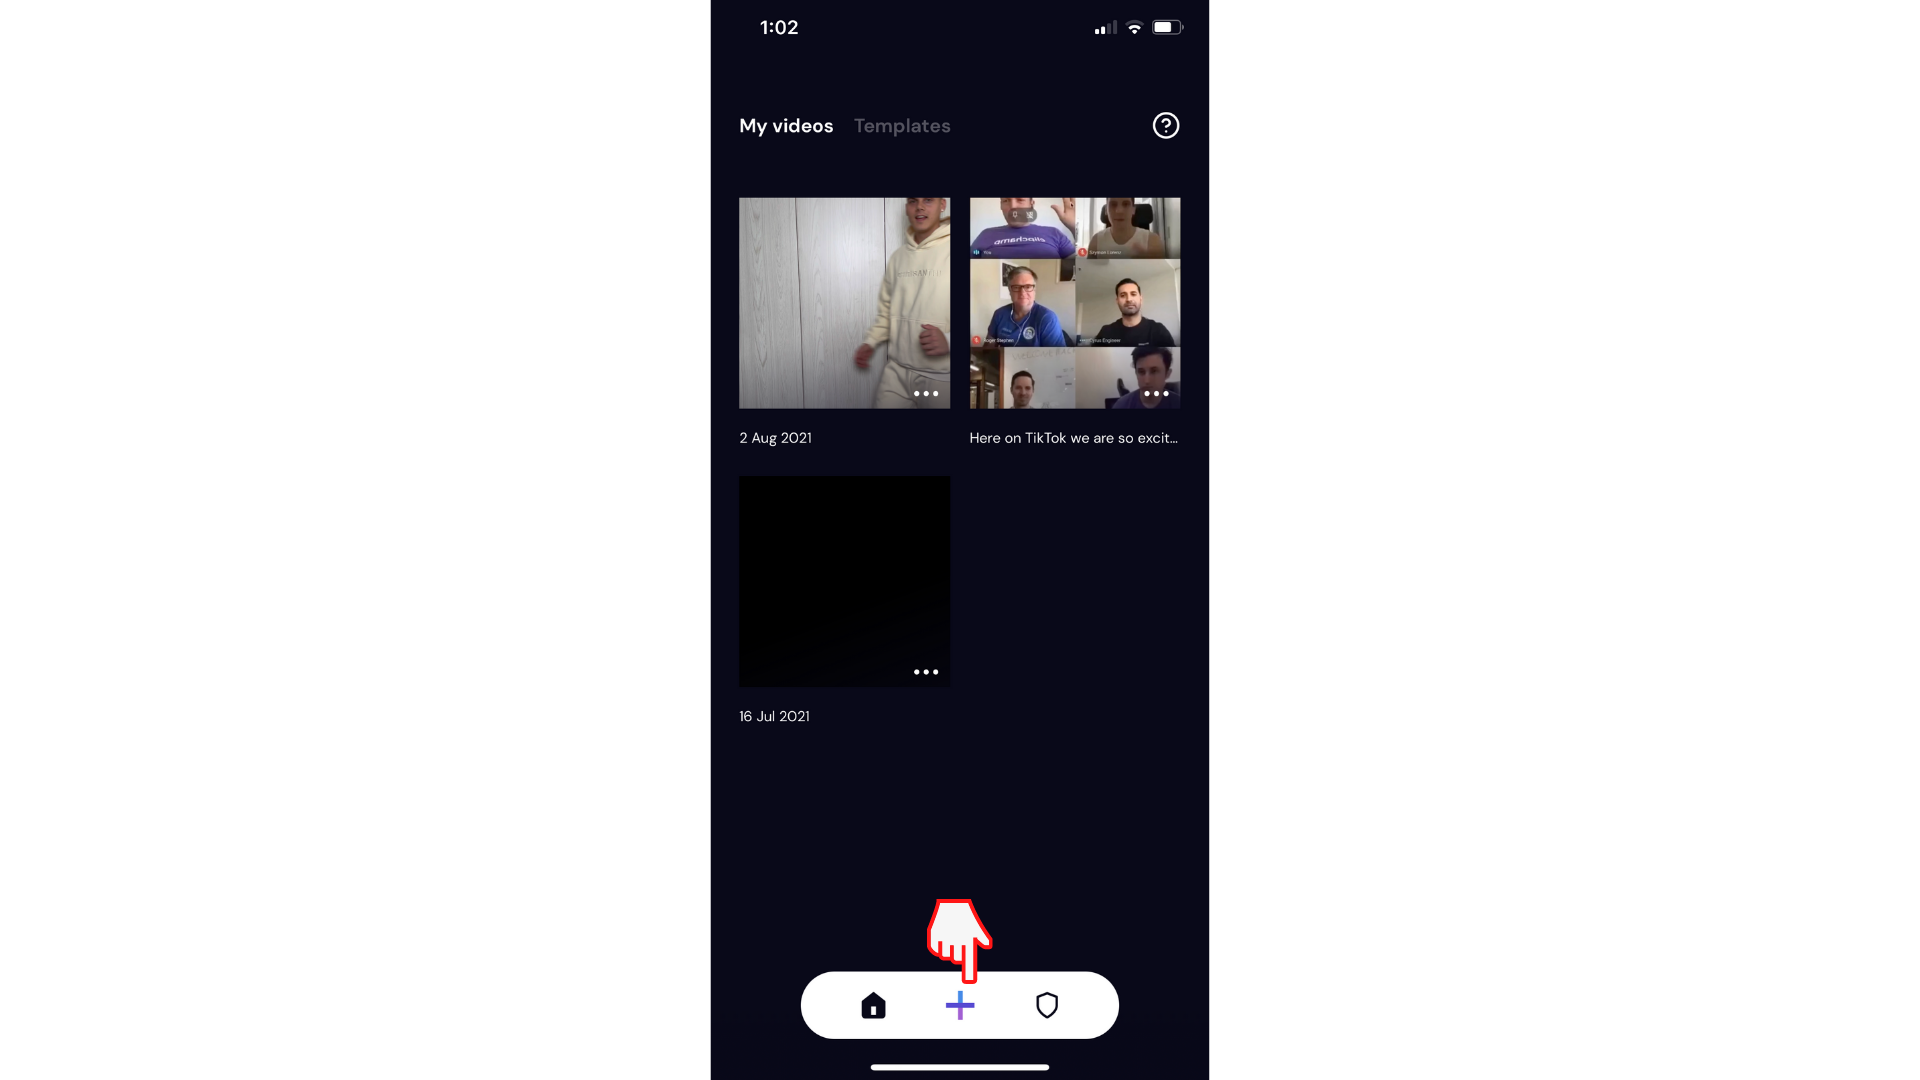 Usuario creando un vídeo en la aplicación de iOS Clipchamp haciendo clic en el botón más